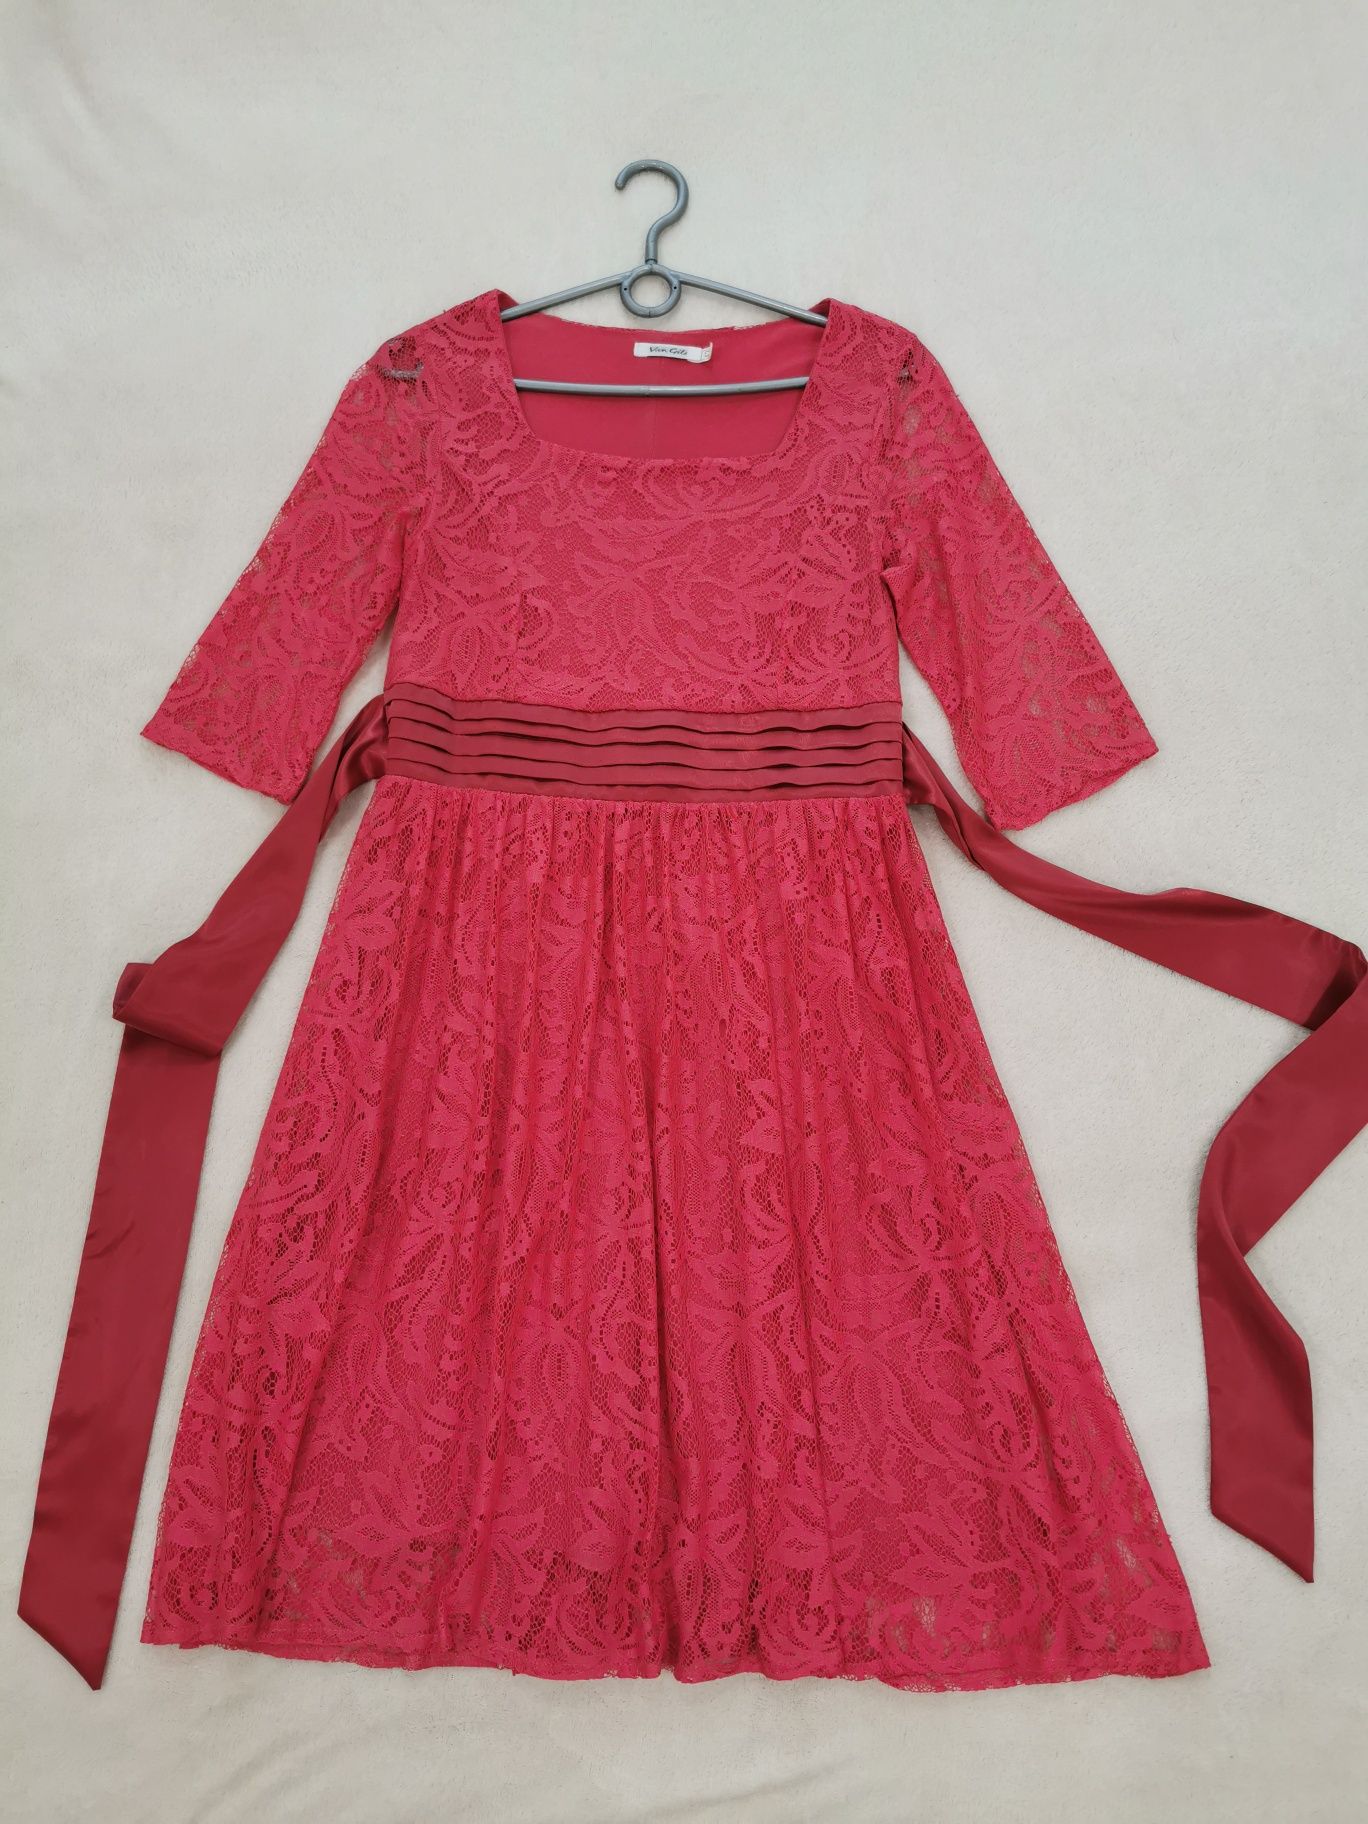 Платье гипюровое, розовое. Размер 42